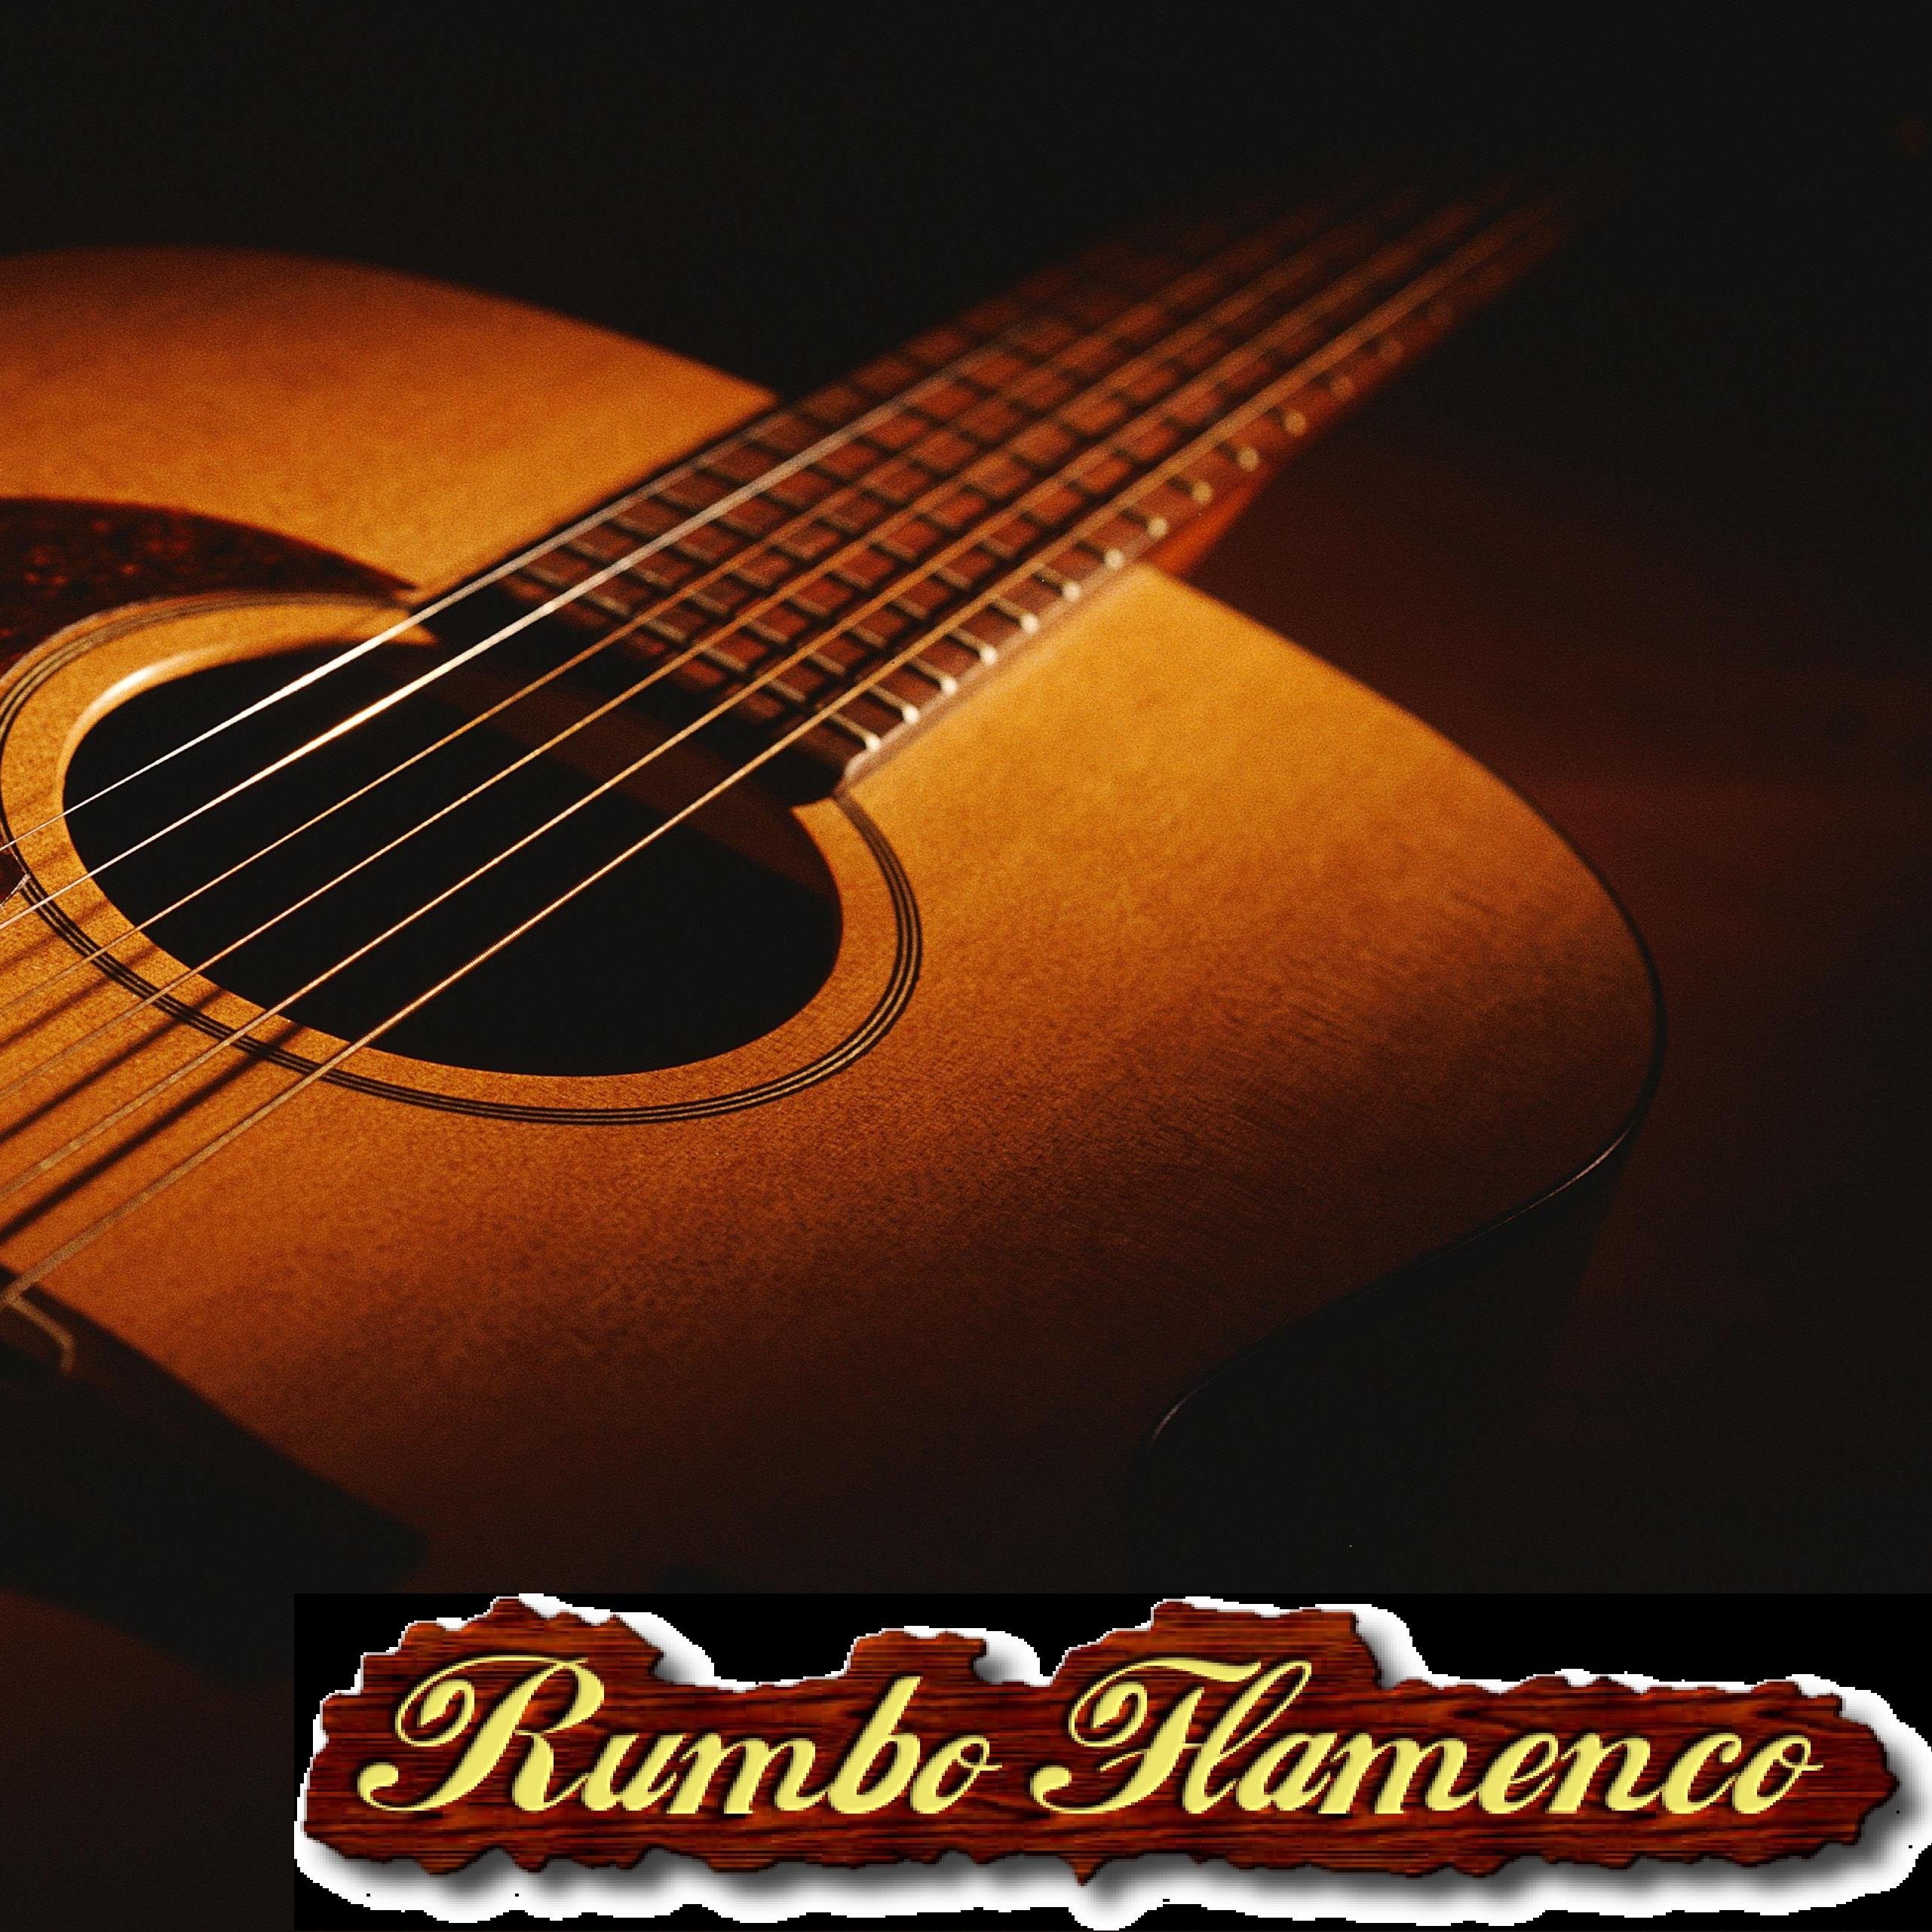 Rumbo Flamenco